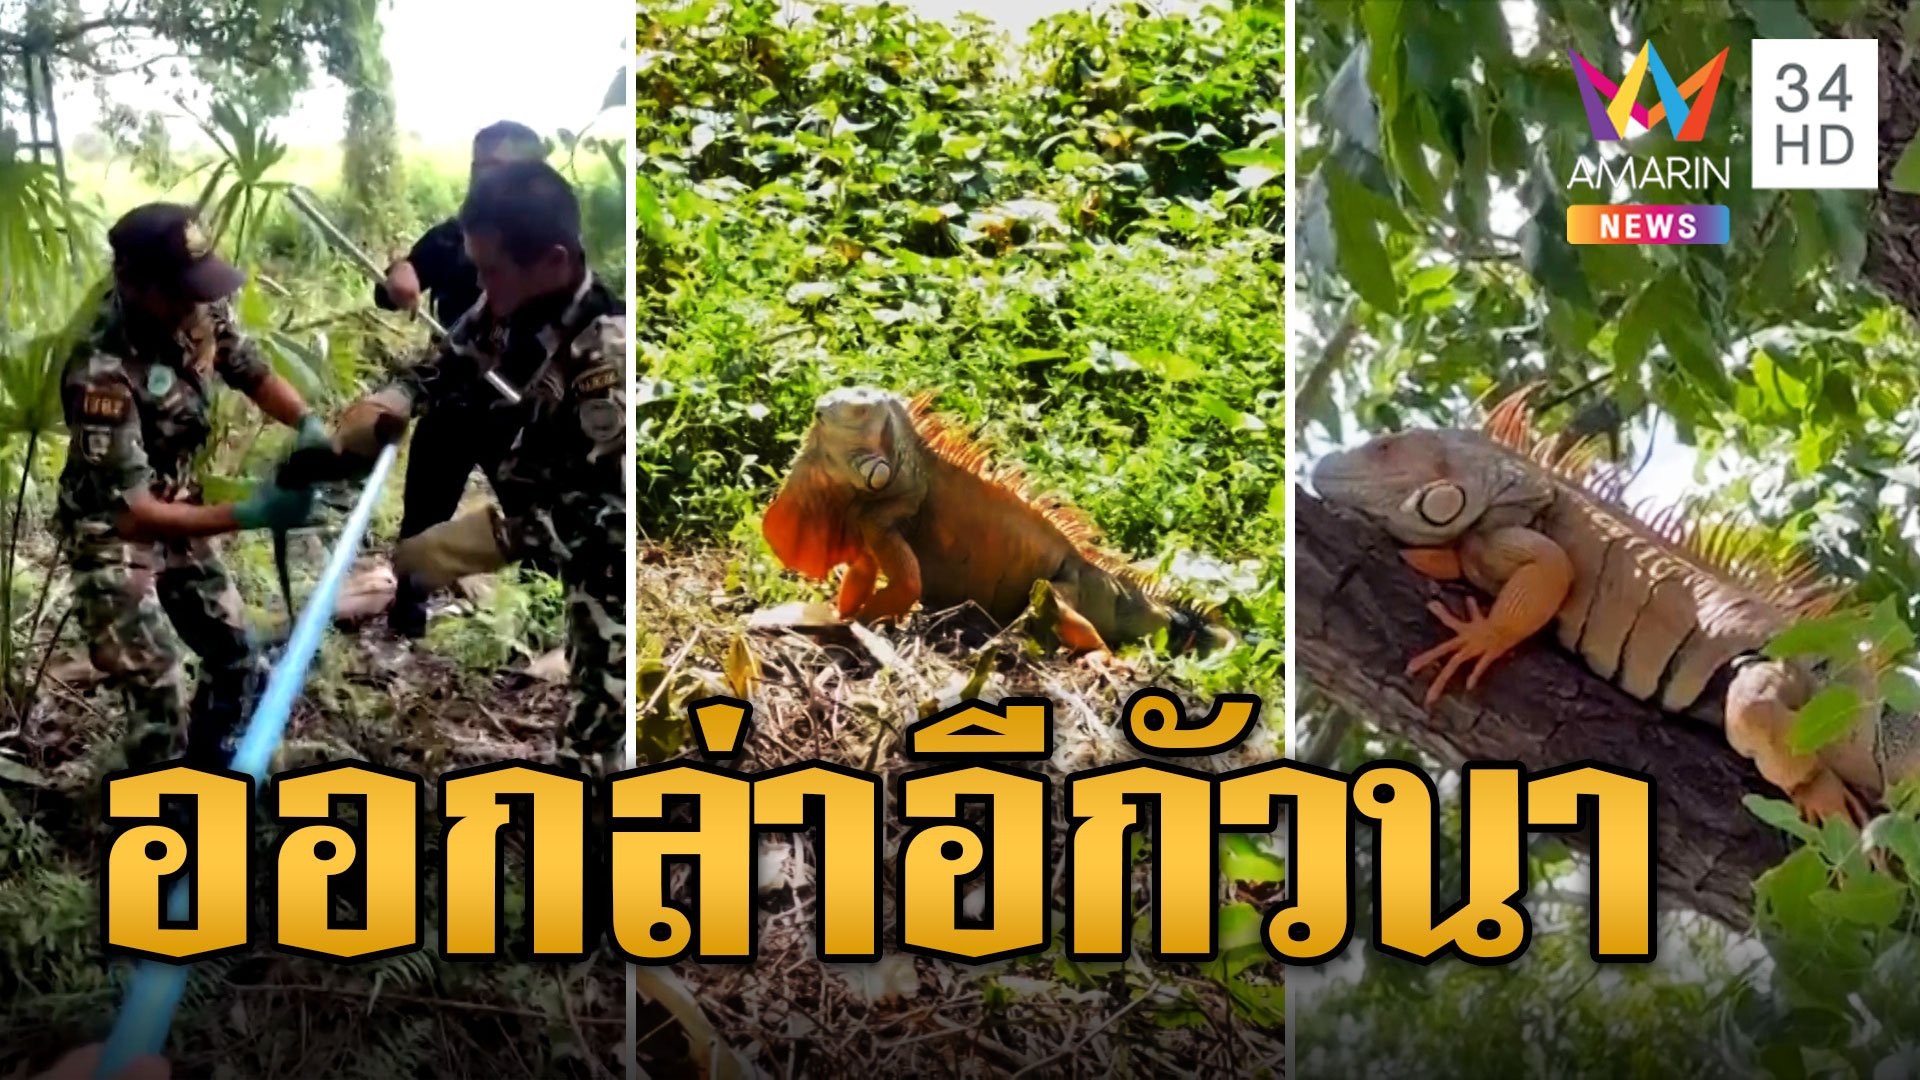 ล่า อีกัวนา ทั่วไทย คนเลี้ยงไม่ไหวเอาไปปล่อยป่า ระบบนิเวศพัง | ข่าวอรุณอมรินทร์ | 17 พ.ย. 66 | AMARIN TVHD34